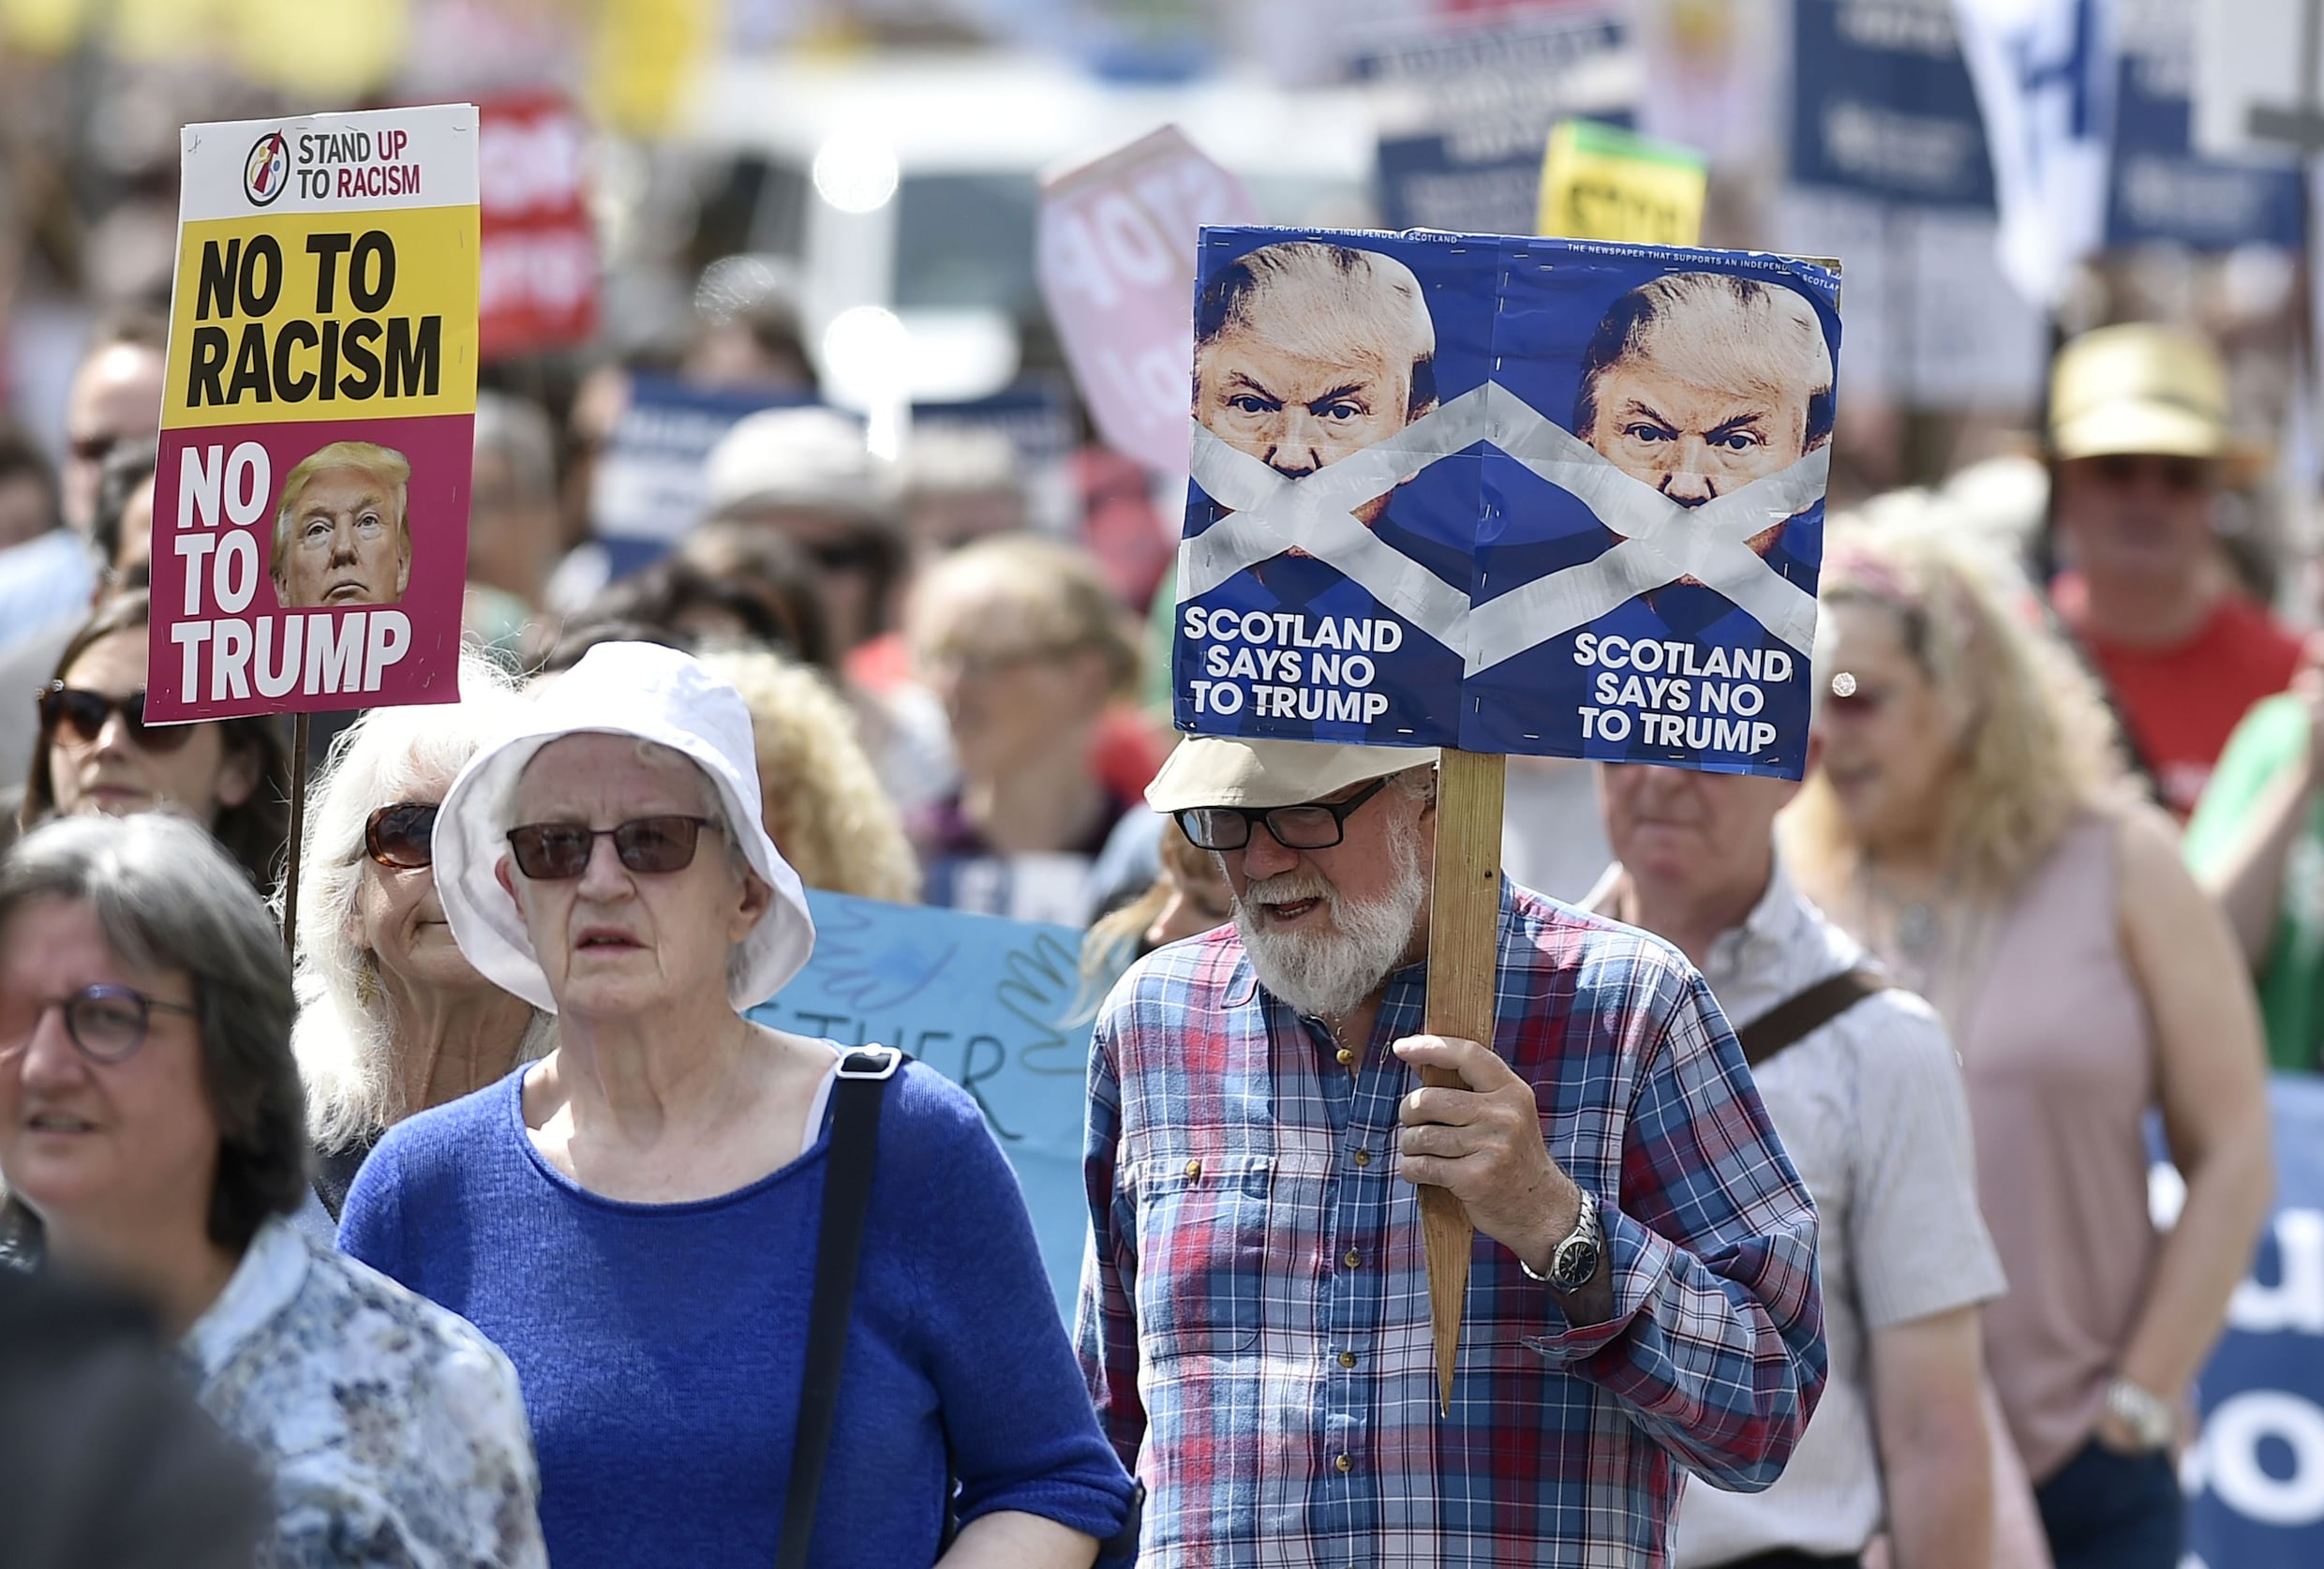 Duizenden Schotten protesteren tegen komst Trump: "We konden hem niet zomaar een rustig partijtje golf laten spelen"